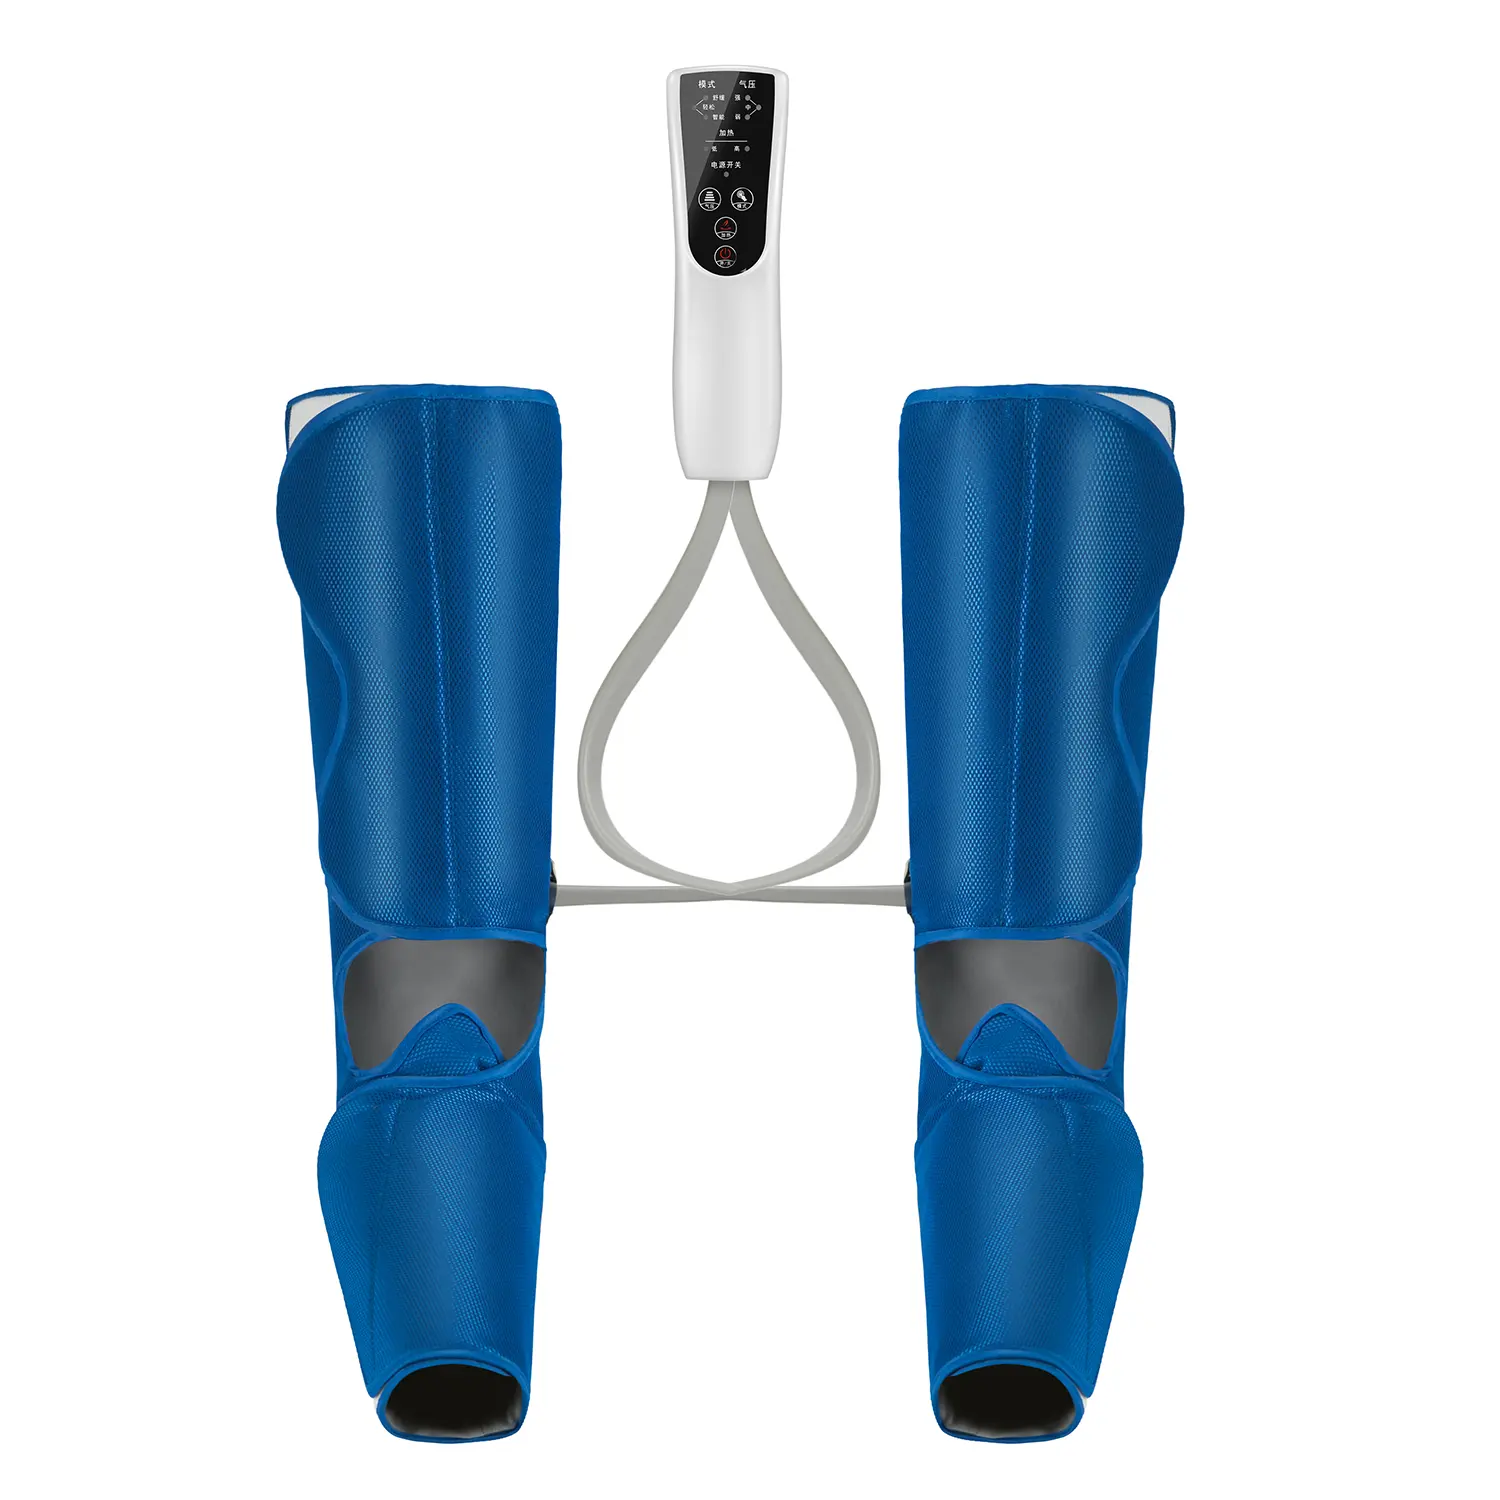 جهاز تدليك للركبة والساقين من لوياو, جهاز محمول لكهرباء ضغط الهواء للركبة والساقين ، جهاز محمول كامل الأعلى مبيعاً في الولايات المتحدة الأمريكية